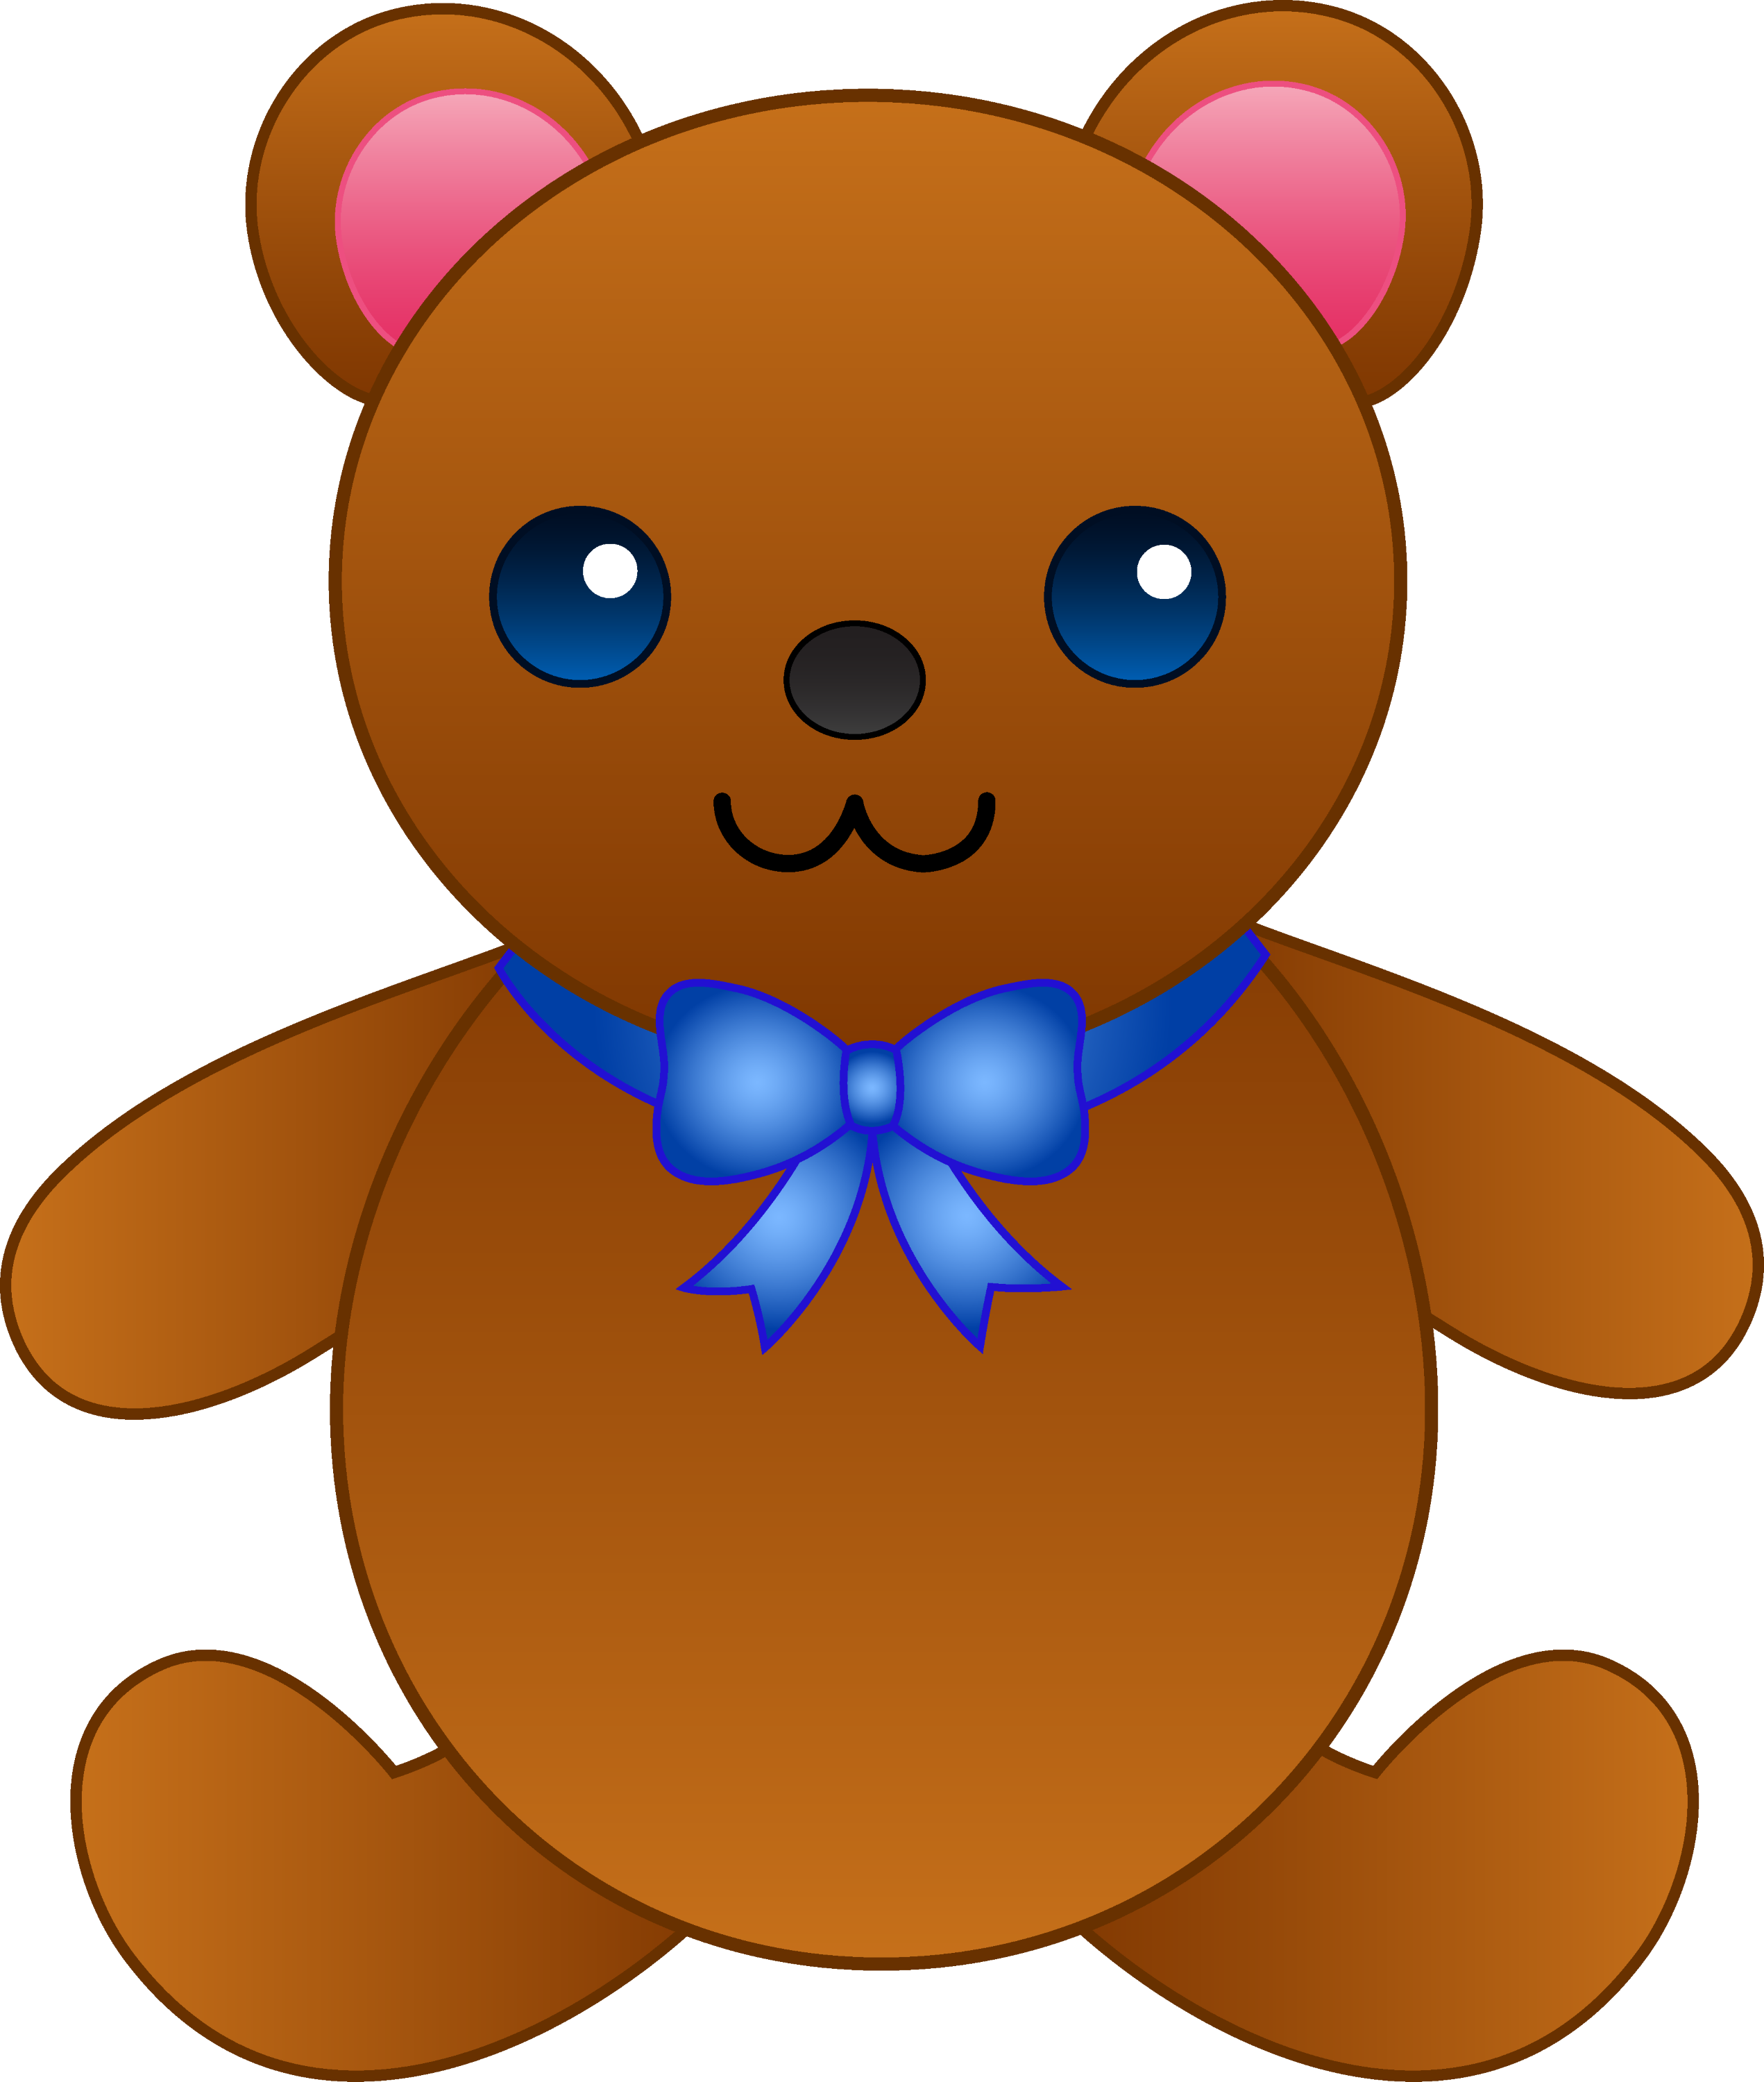 cute teddy bear clipart - photo #36